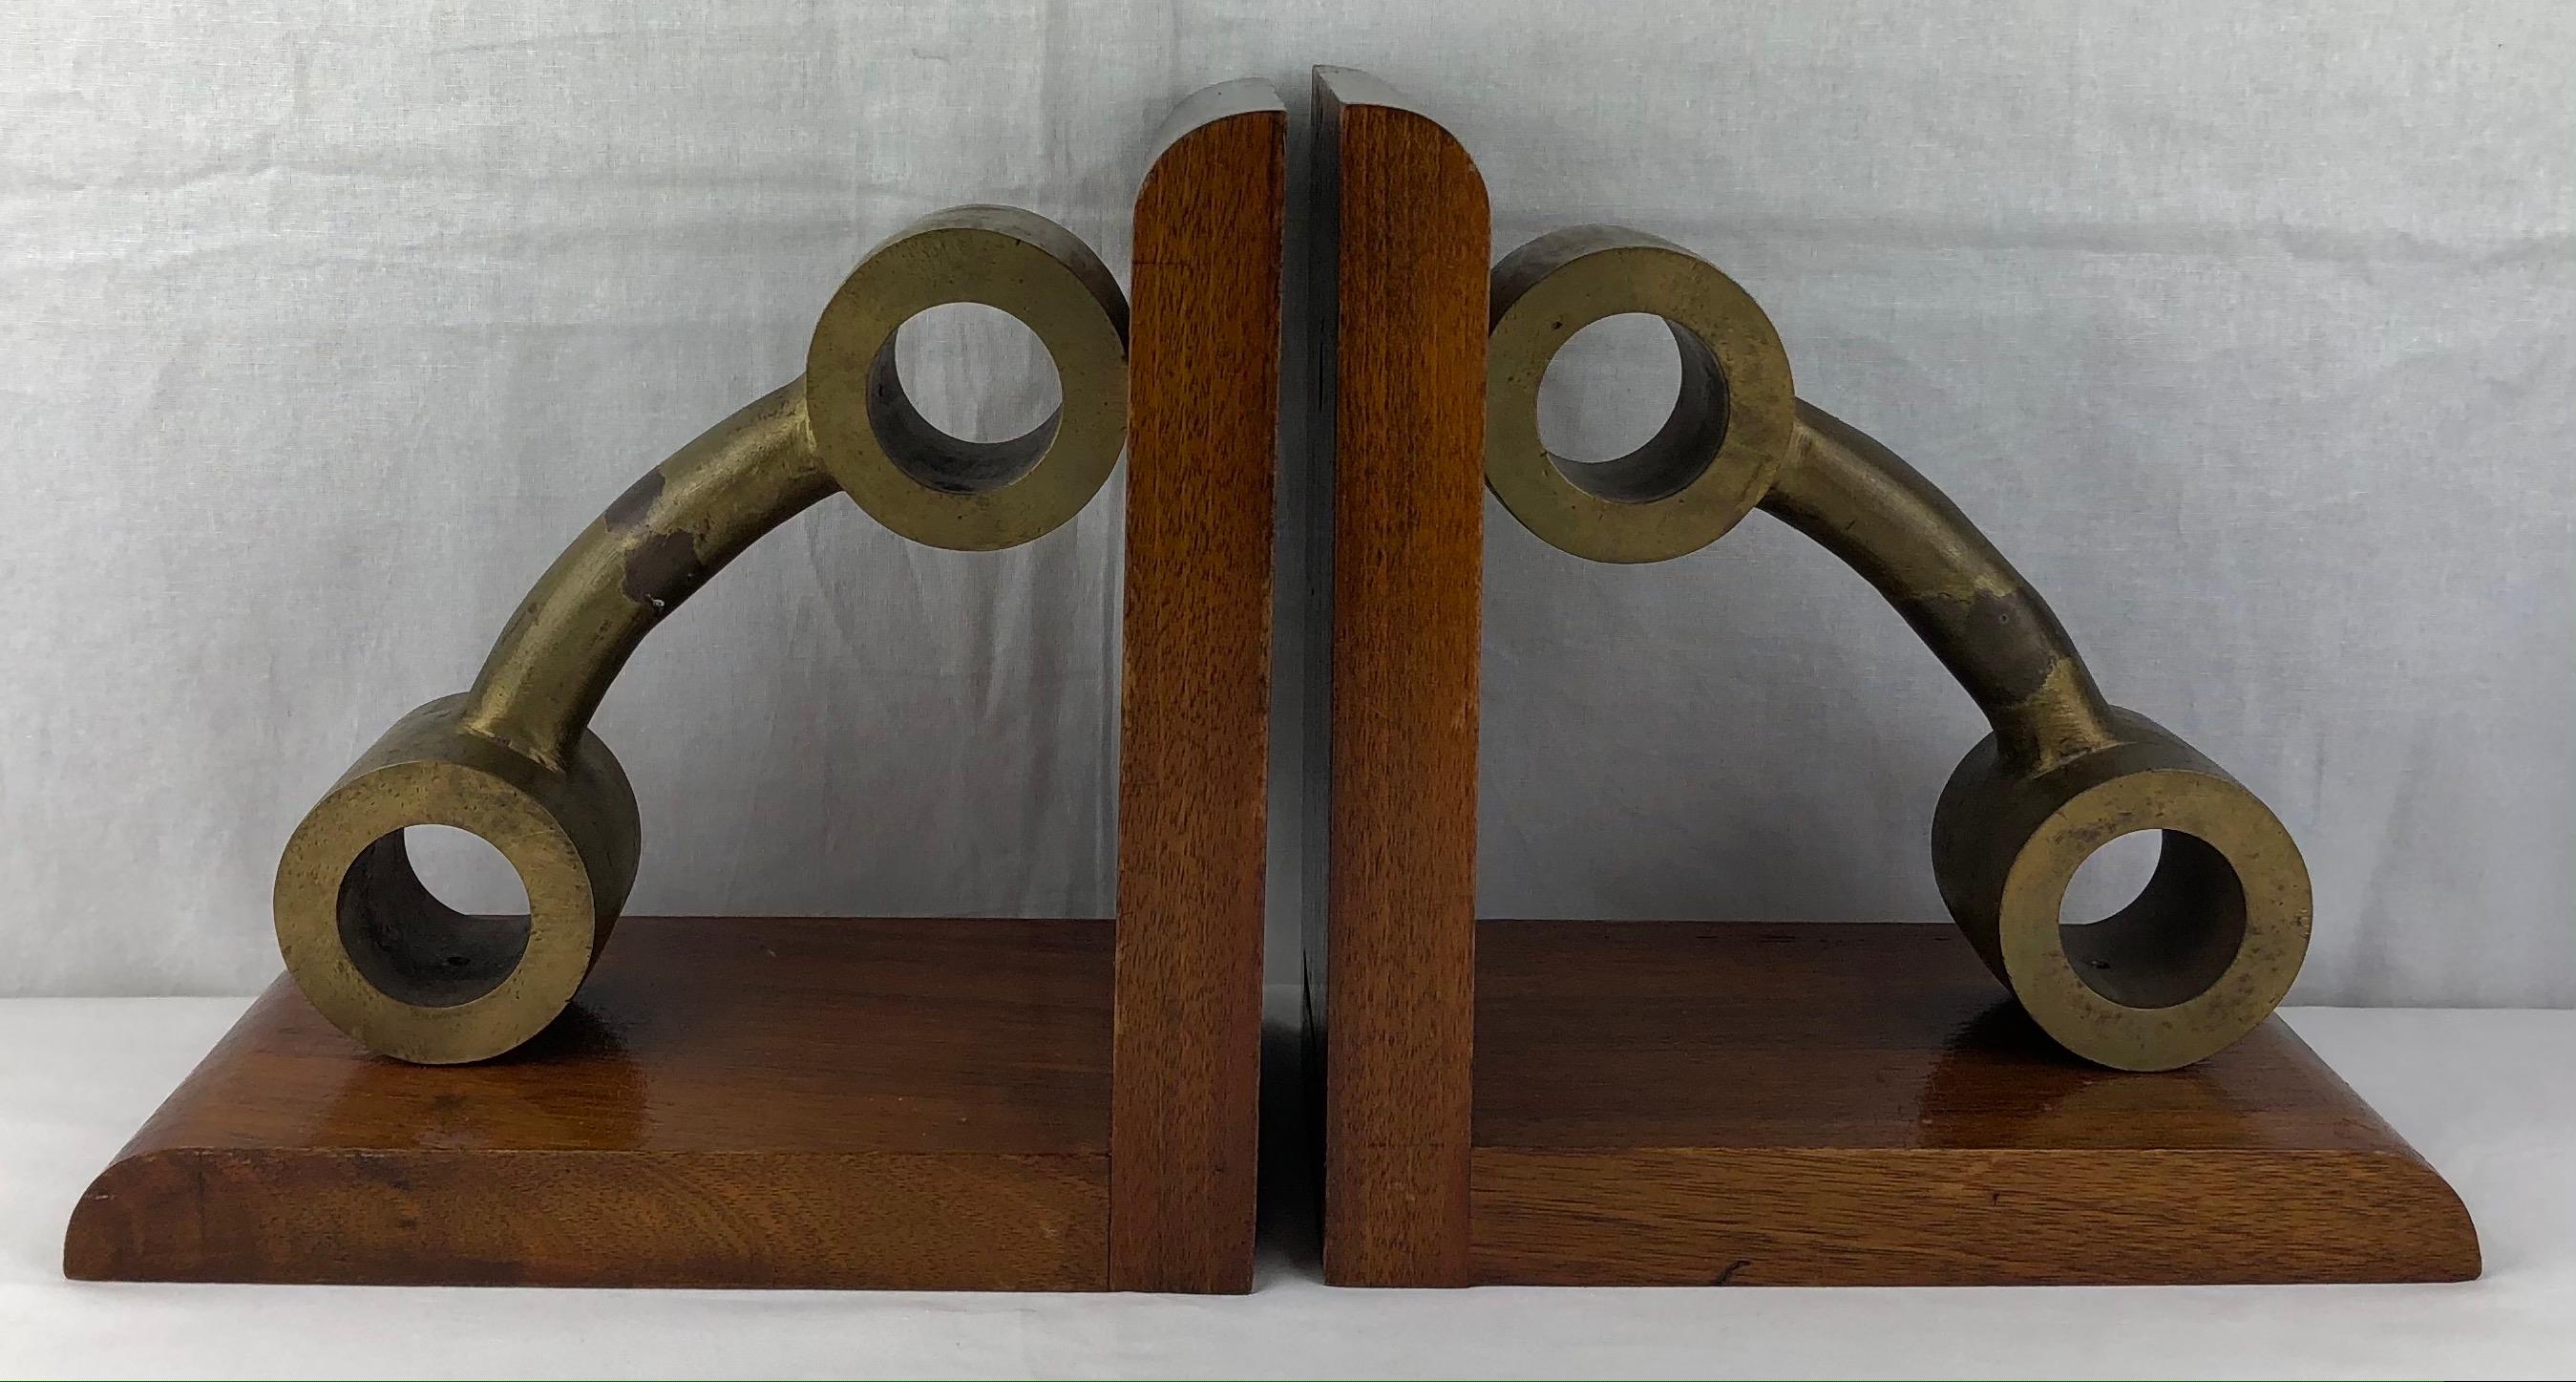 Ein großes, hochwertiges Paar französischer Art-Déco-Buchstützen aus Bronze und Mahagoniholz, um 1940. Erfreulich schwer.

Diese attraktiven Buchstützen zeigen scheinbar geformte Gewichte oder Hanteln. Sie machen sich wunderbar auf einer großen